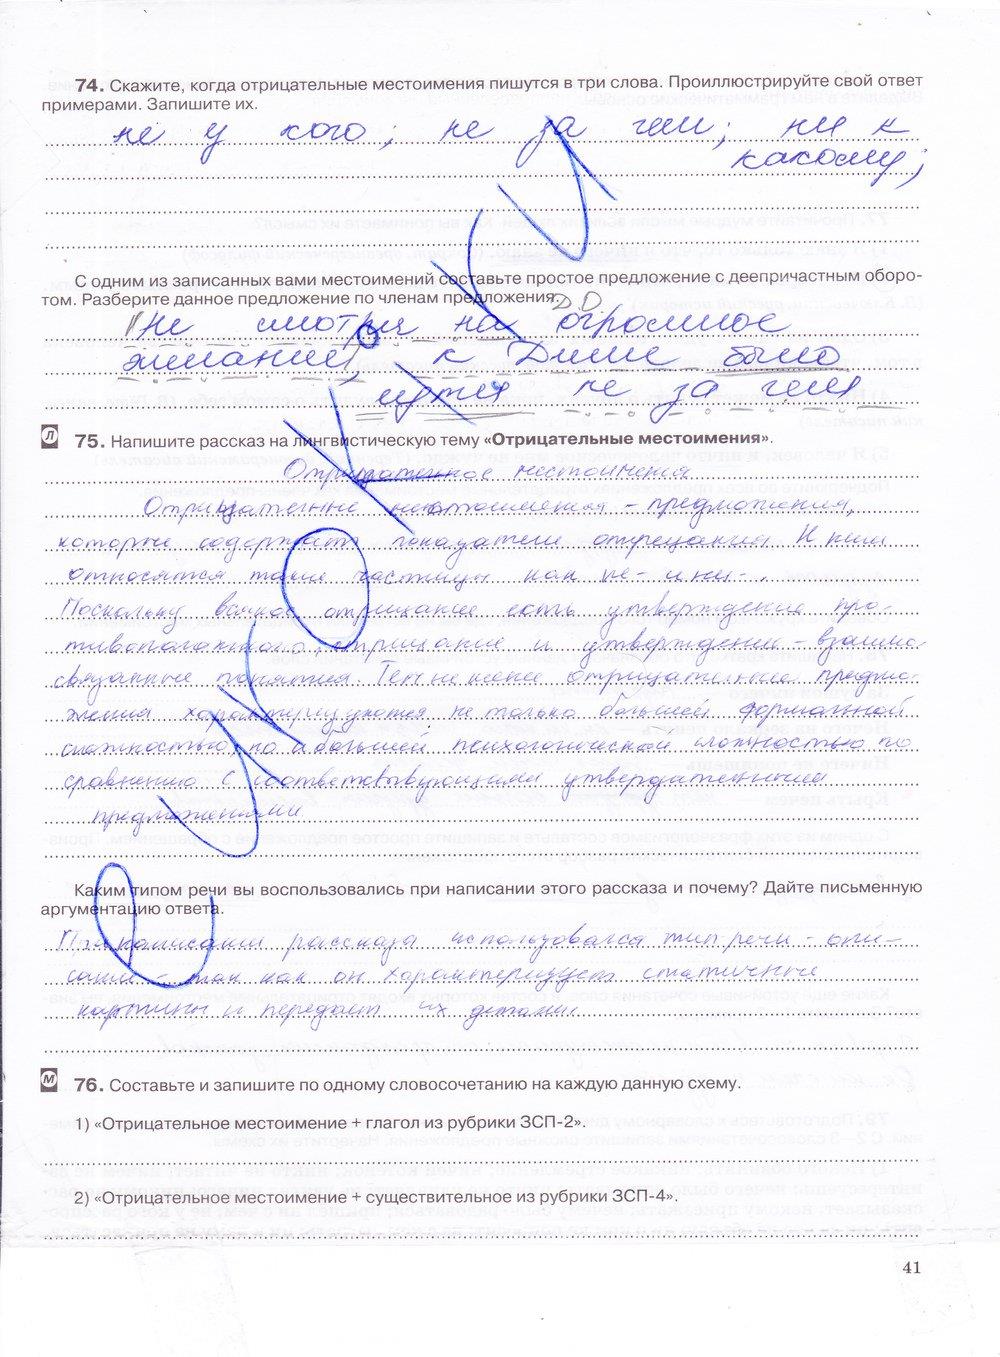 гдз 7 класс рабочая тетрадь страница 41 русский язык Ларионова